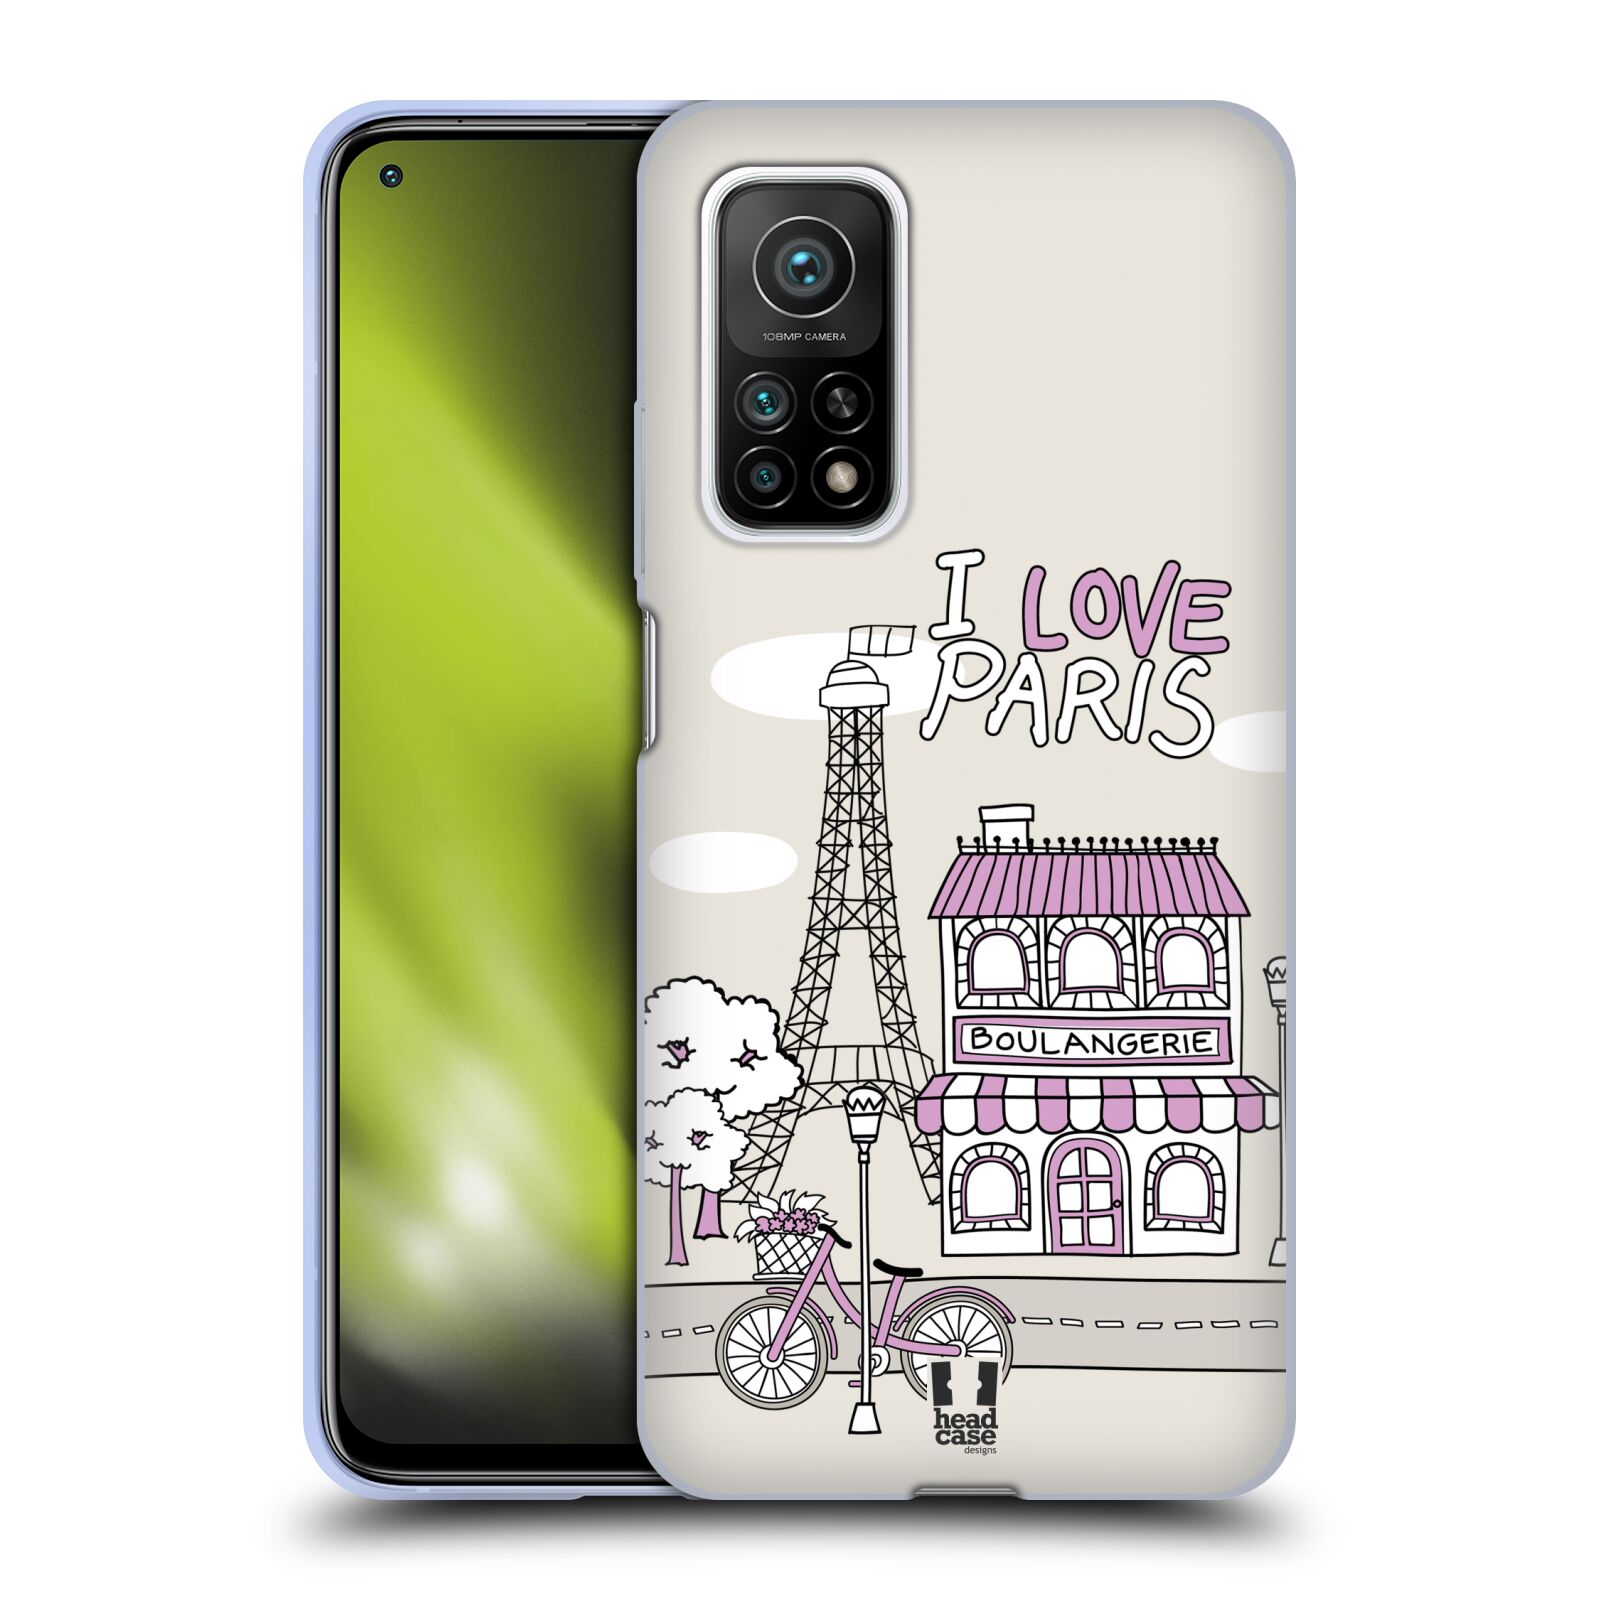 Plastový obal HEAD CASE na mobil Xiaomi Mi 10T a Mi 10T PRO vzor Kreslená městečka FIALOVÁ, Paříž, Francie, I LOVE PARIS